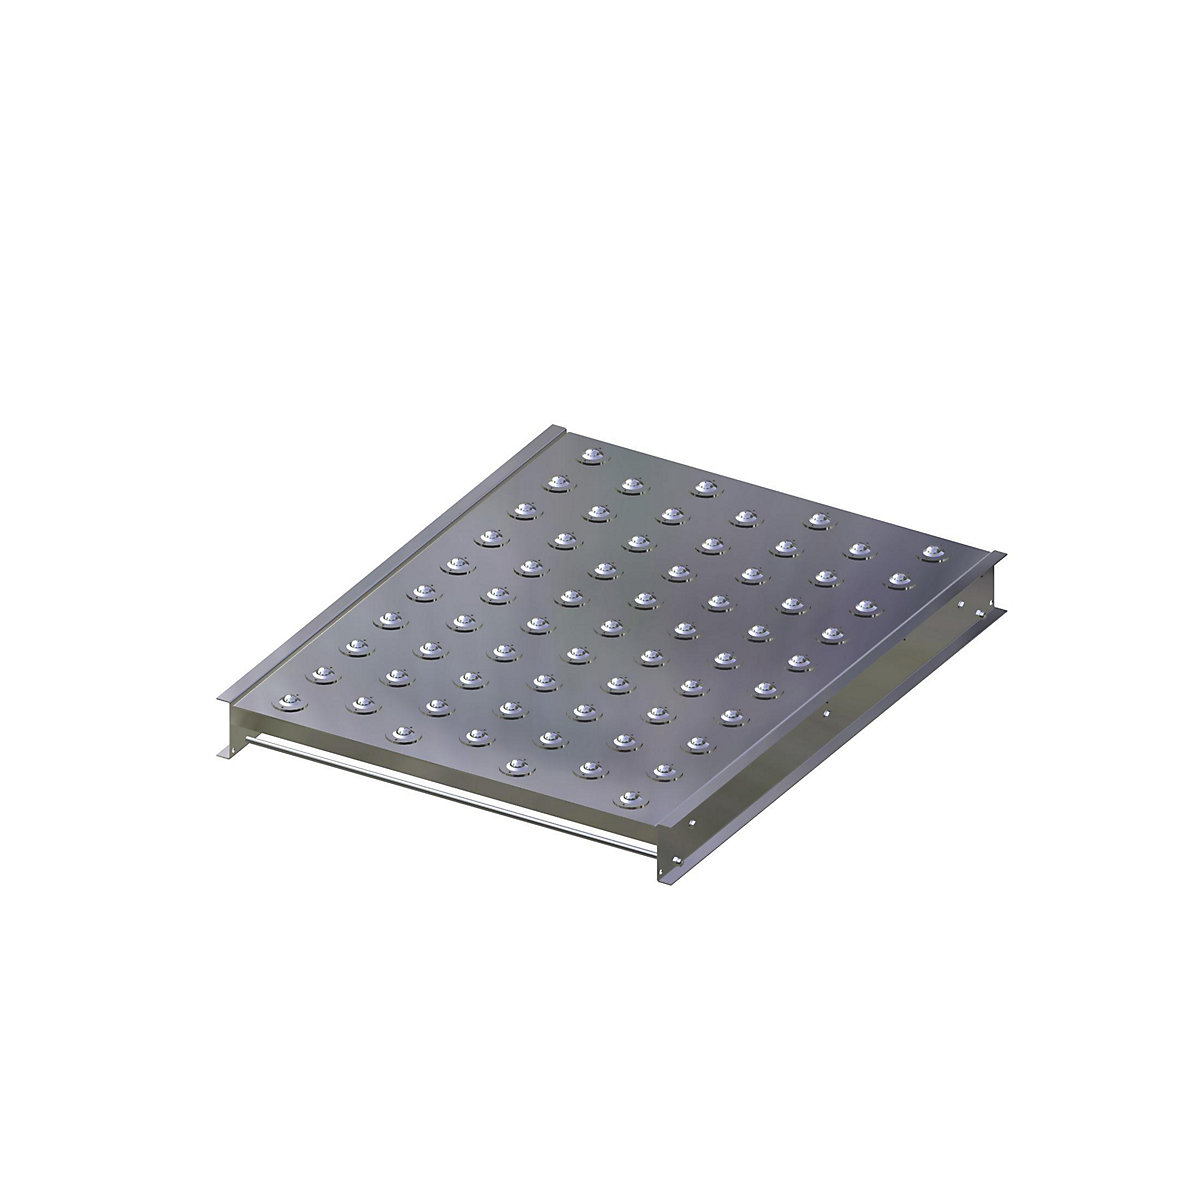 Table à billes porteuses – Gura, largeur voie 750 mm, longueur 1000 mm, écartement de 100 mm